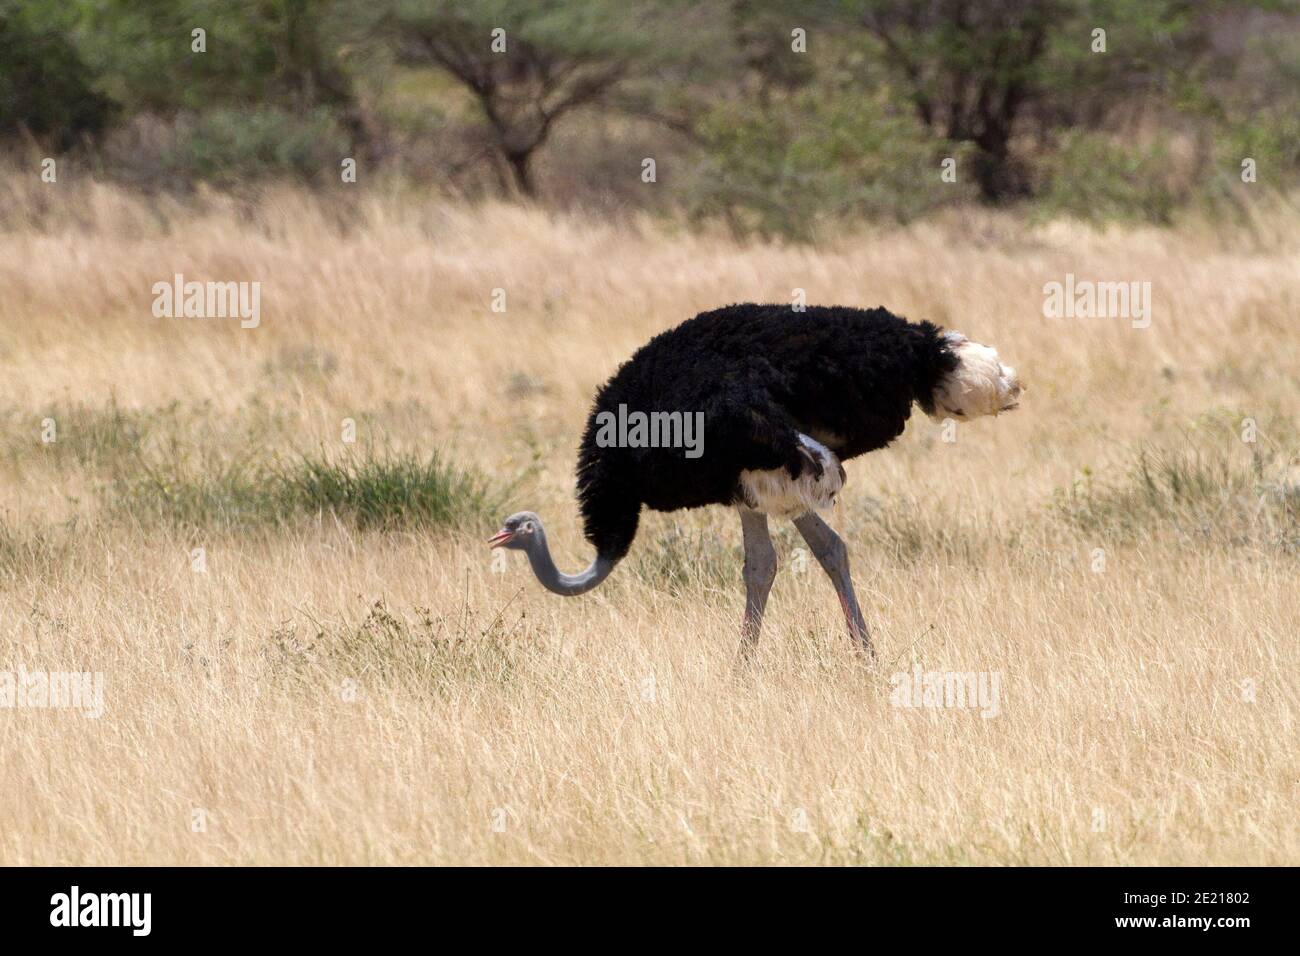 El avestruz somalí (Struthio molybdophanes), también conocido como avestruz de cuello azul, es un gran ave sin vuelo nativo del Cuerno de África.[2] era Foto de stock